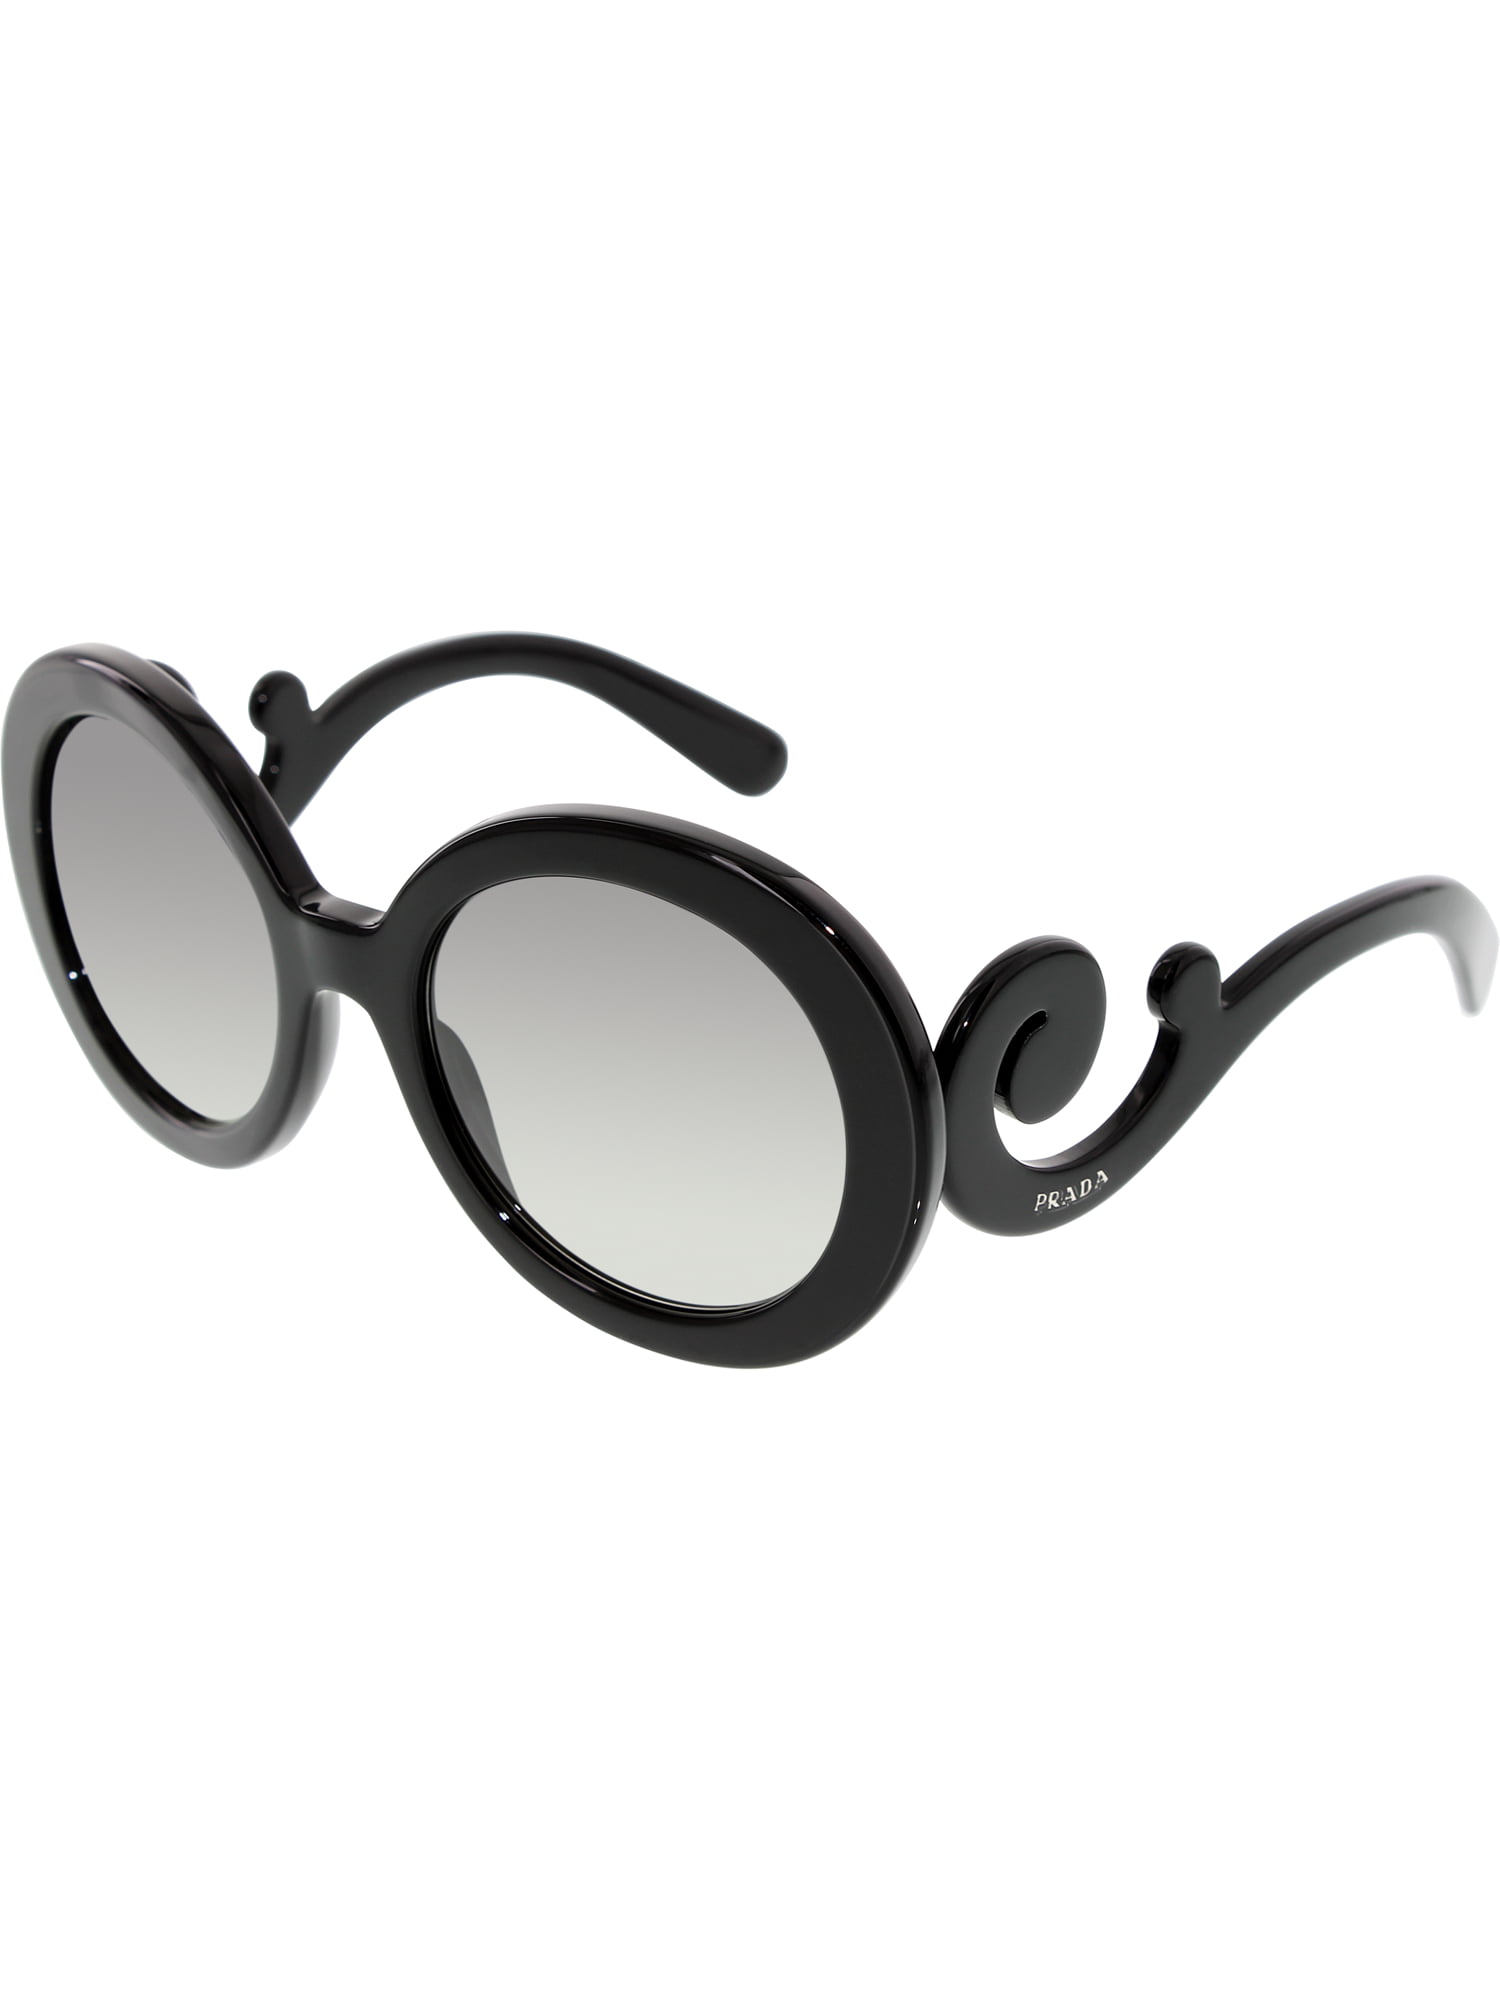 prada women's round sunglasses